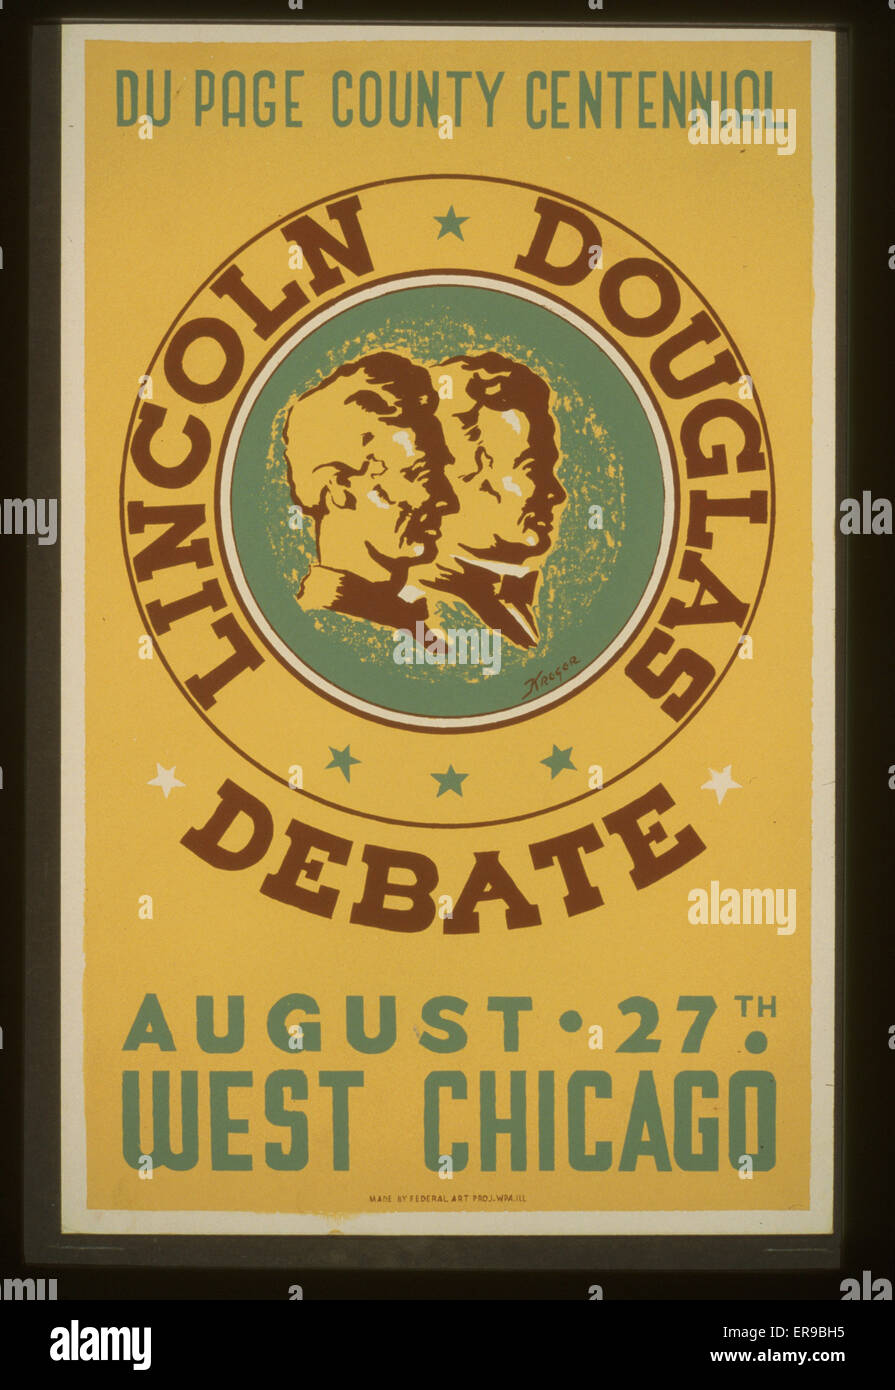 Lincoln Douglas débat du Comté de la page centenaire, août 27T Banque D'Images